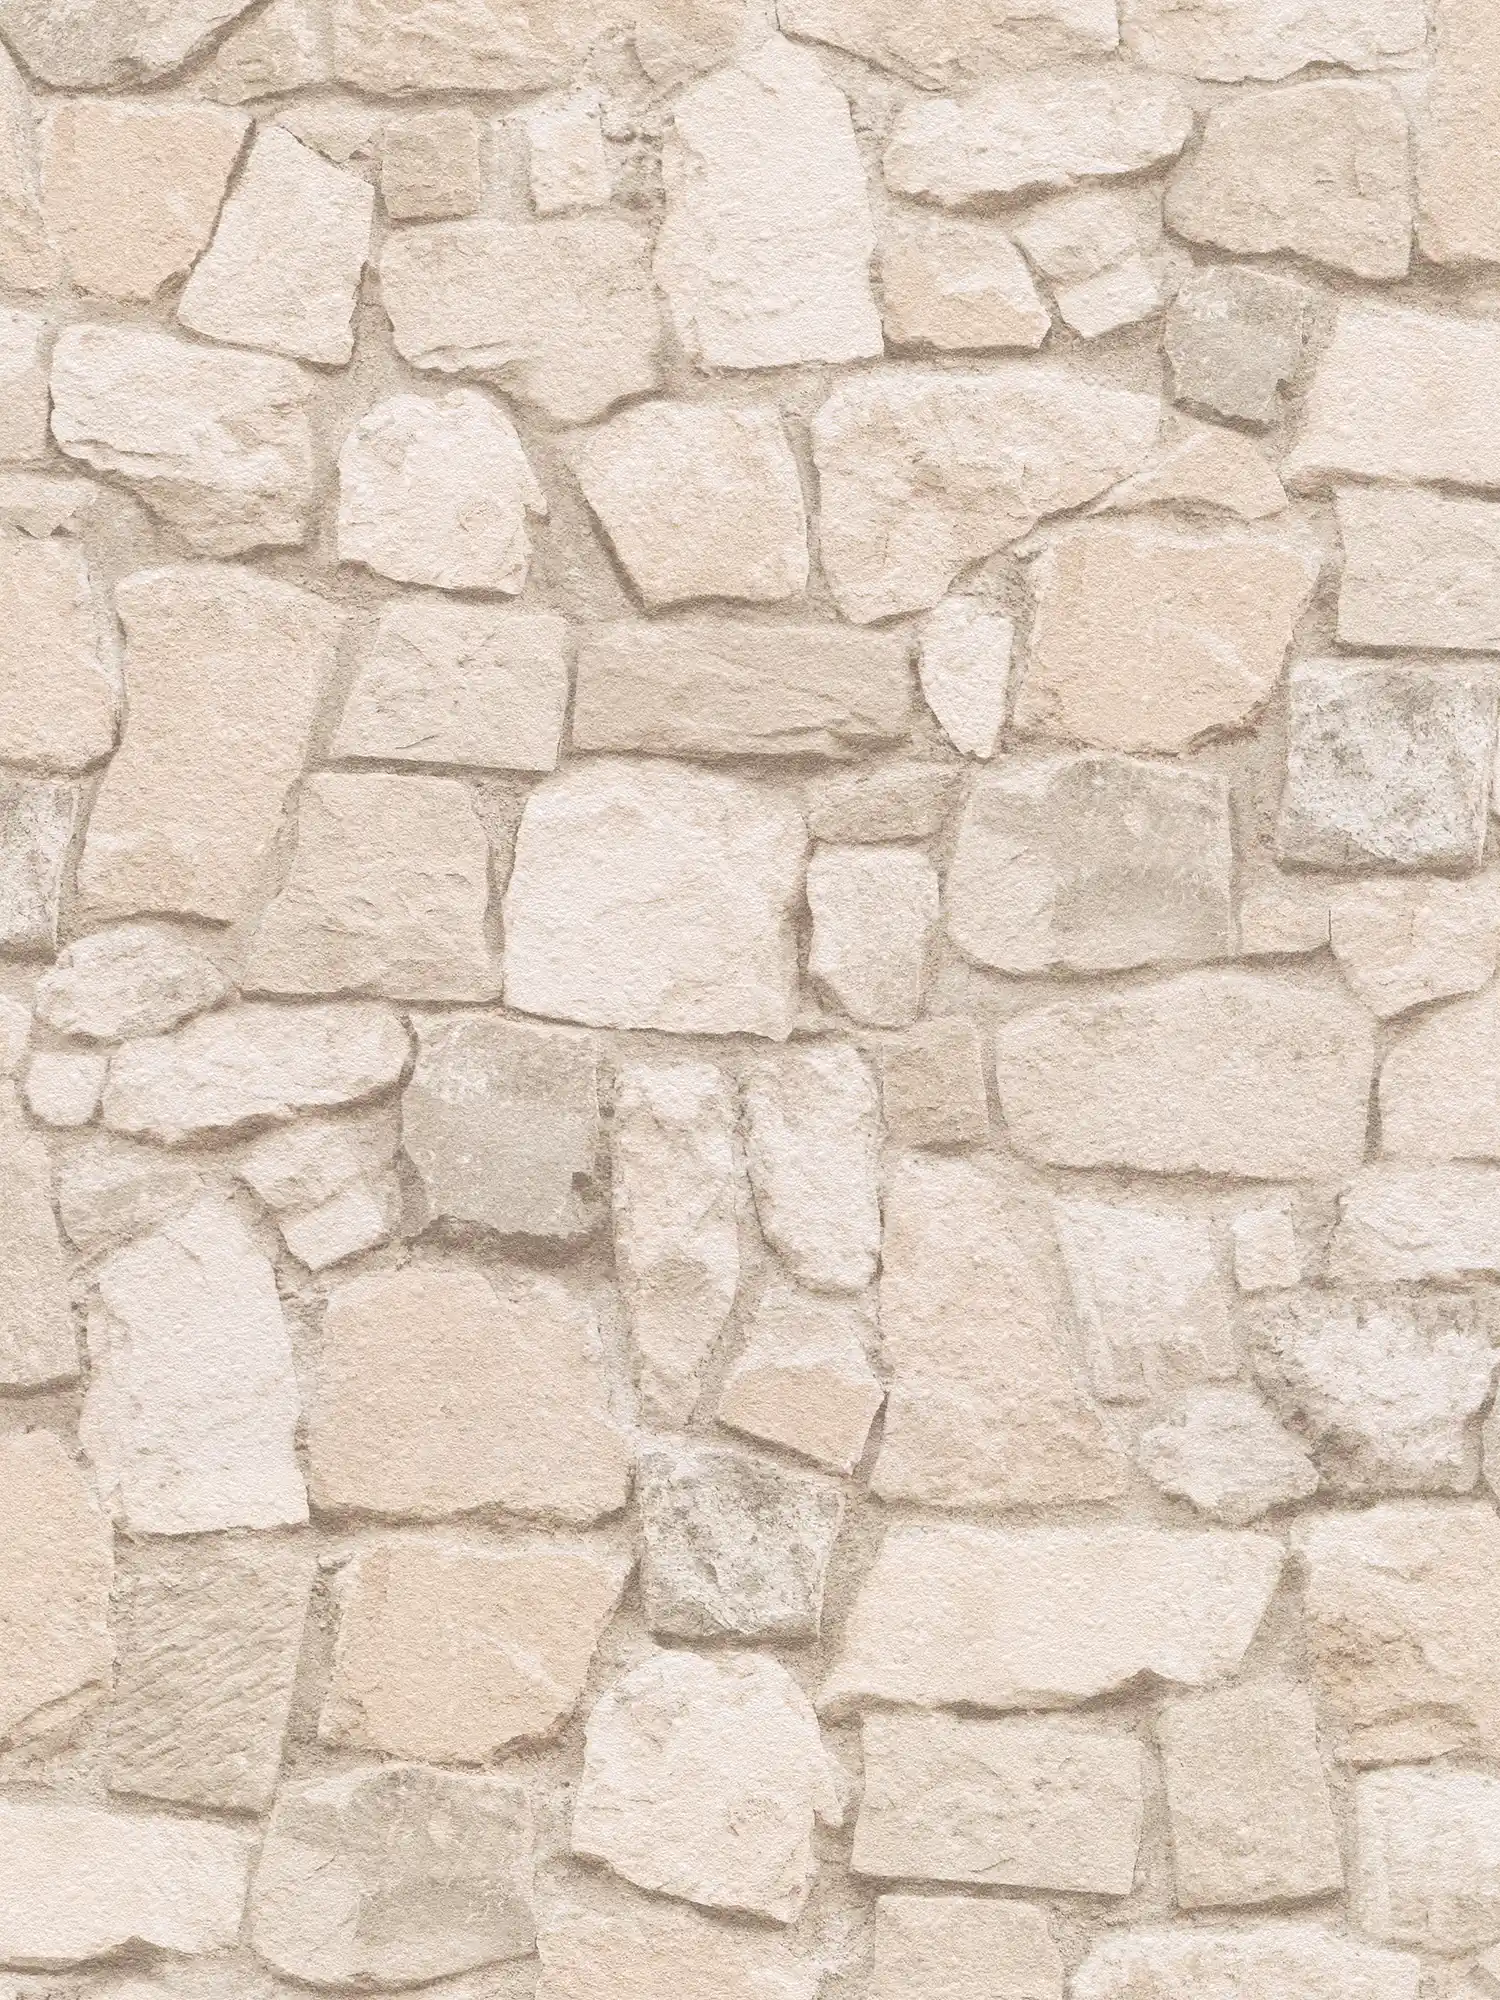         Steintapete mit 3D-Effekt und Sandstein-Mauerwerk – Beige, Braun
    